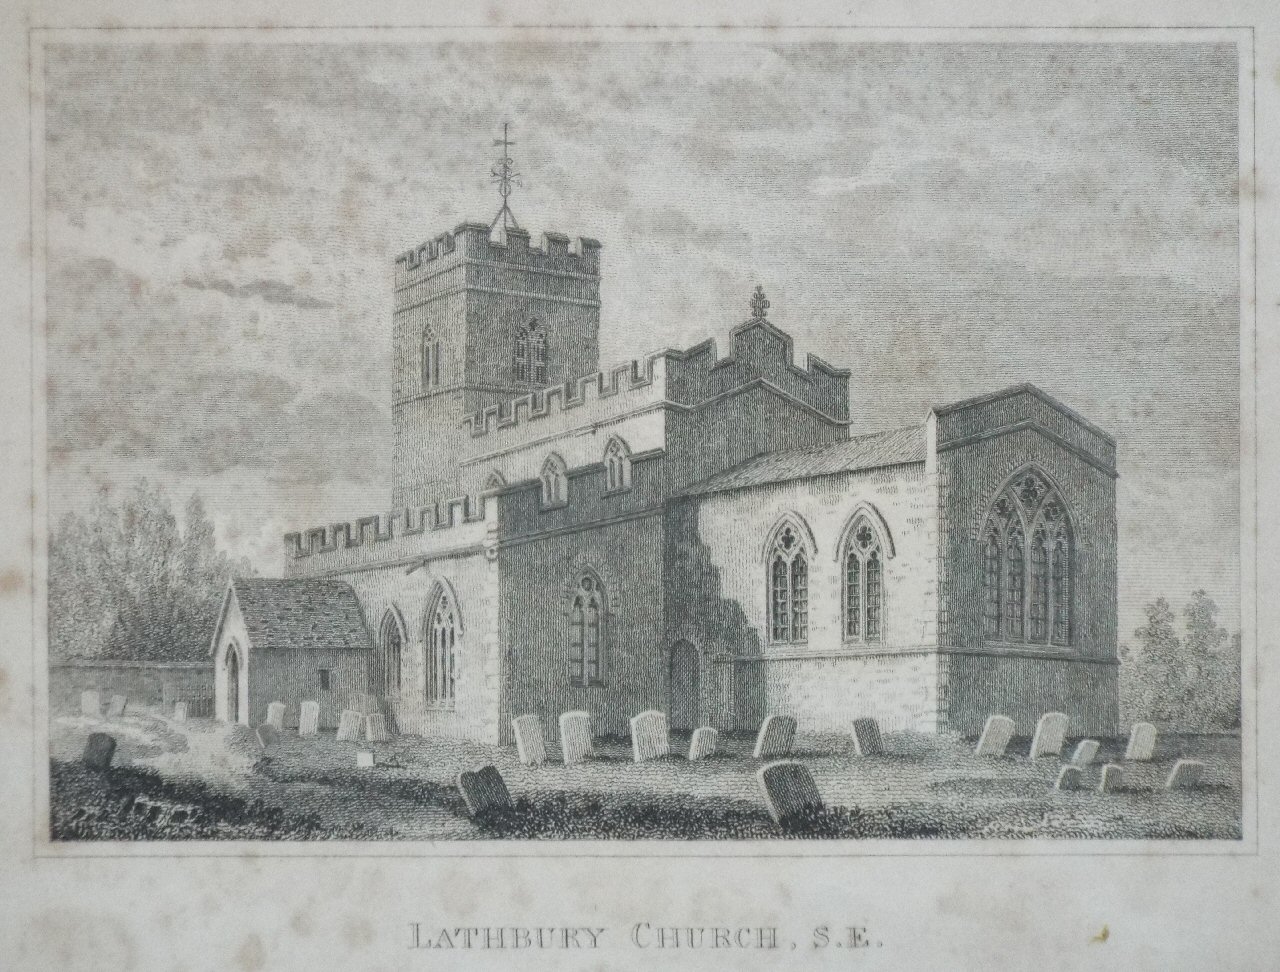 Print - Lathbury Church, S.E.